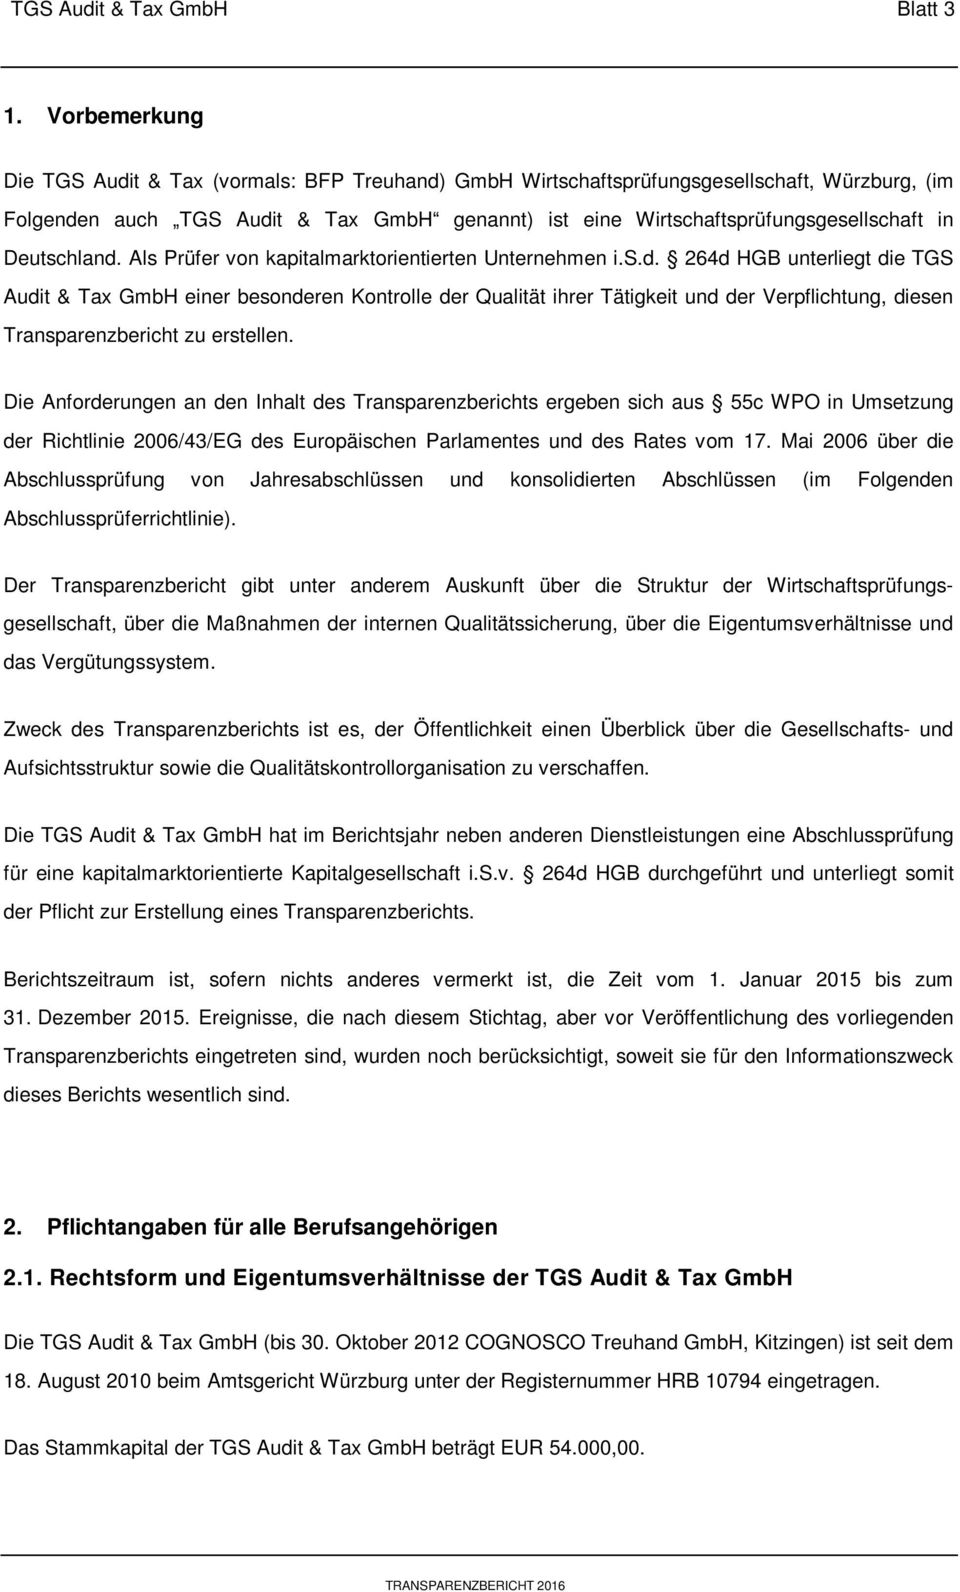 Deutschland. Als Prüfer von kapitalmarktorientierten Unternehmen i.s.d. 264d HGB unterliegt die TGS Audit & Tax GmbH einer besonderen Kontrolle der Qualität ihrer Tätigkeit und der Verpflichtung, diesen Transparenzbericht zu erstellen.